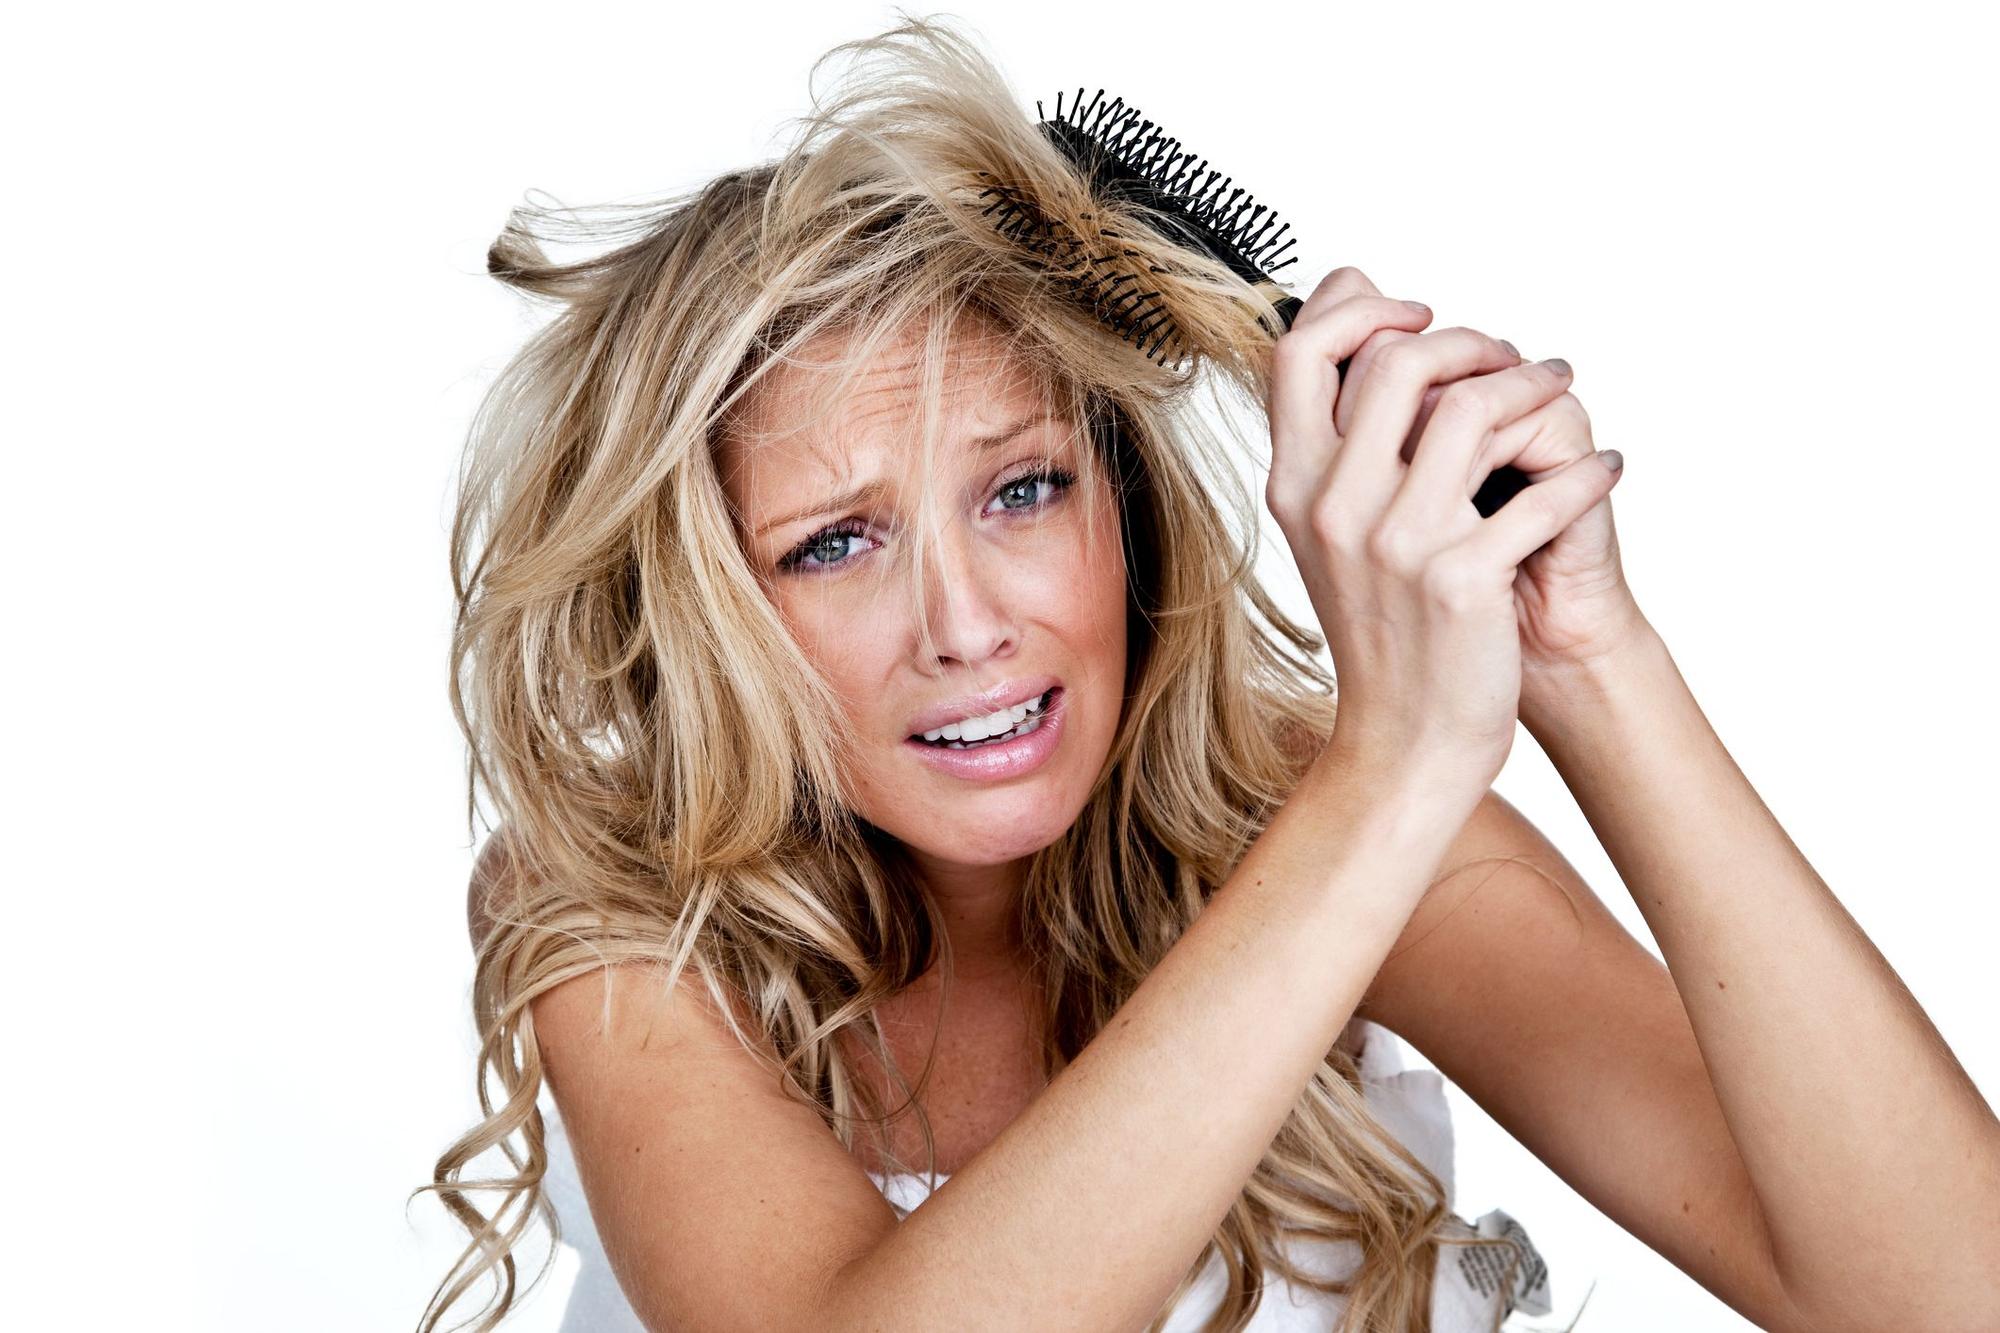 Para el buen mantenimiento del cabello, los cepillos son fundamentales